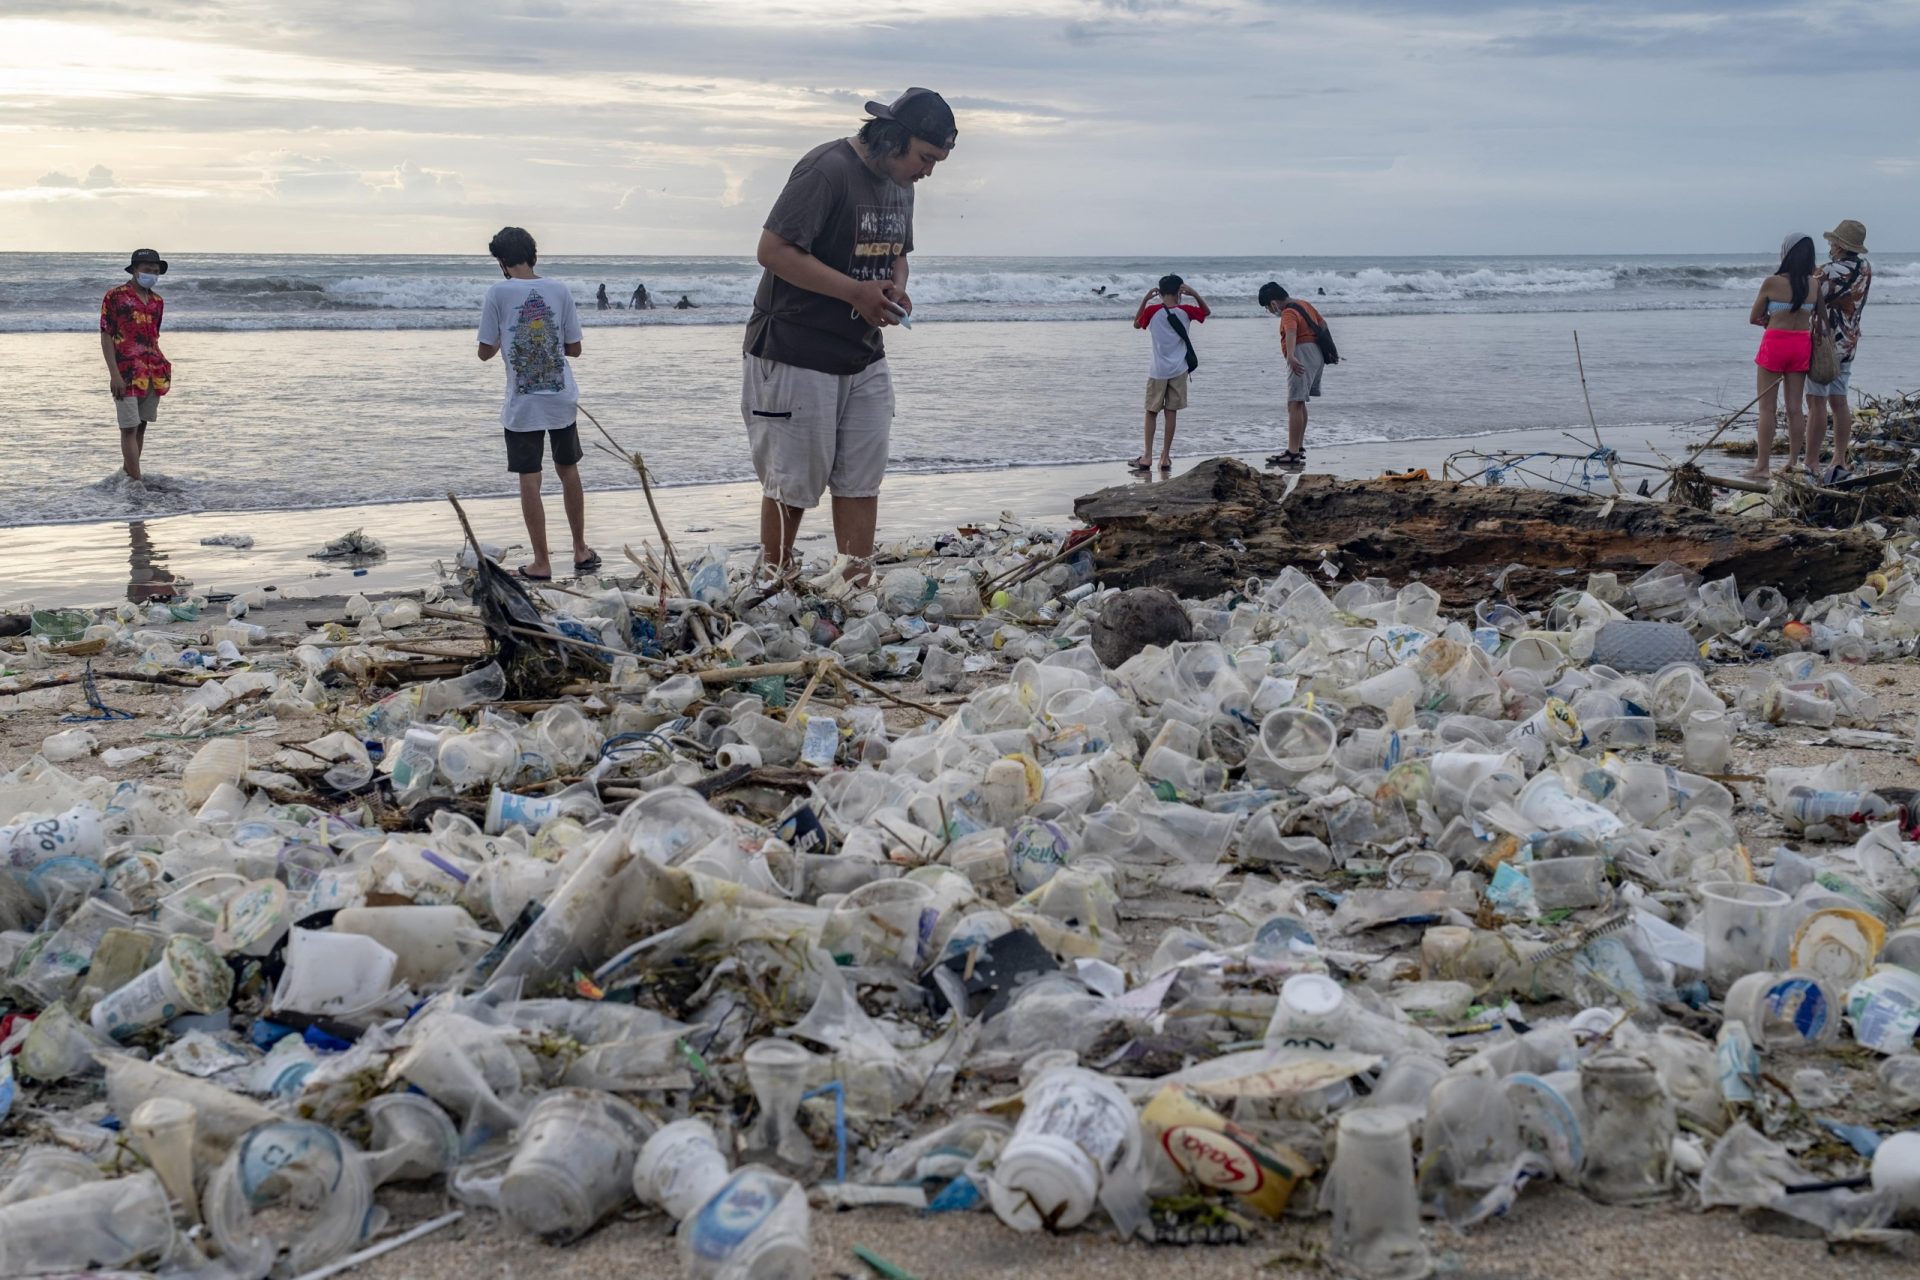 Varias personas caminan por una playa cubierta de plásticos en Bali, Indonesia.